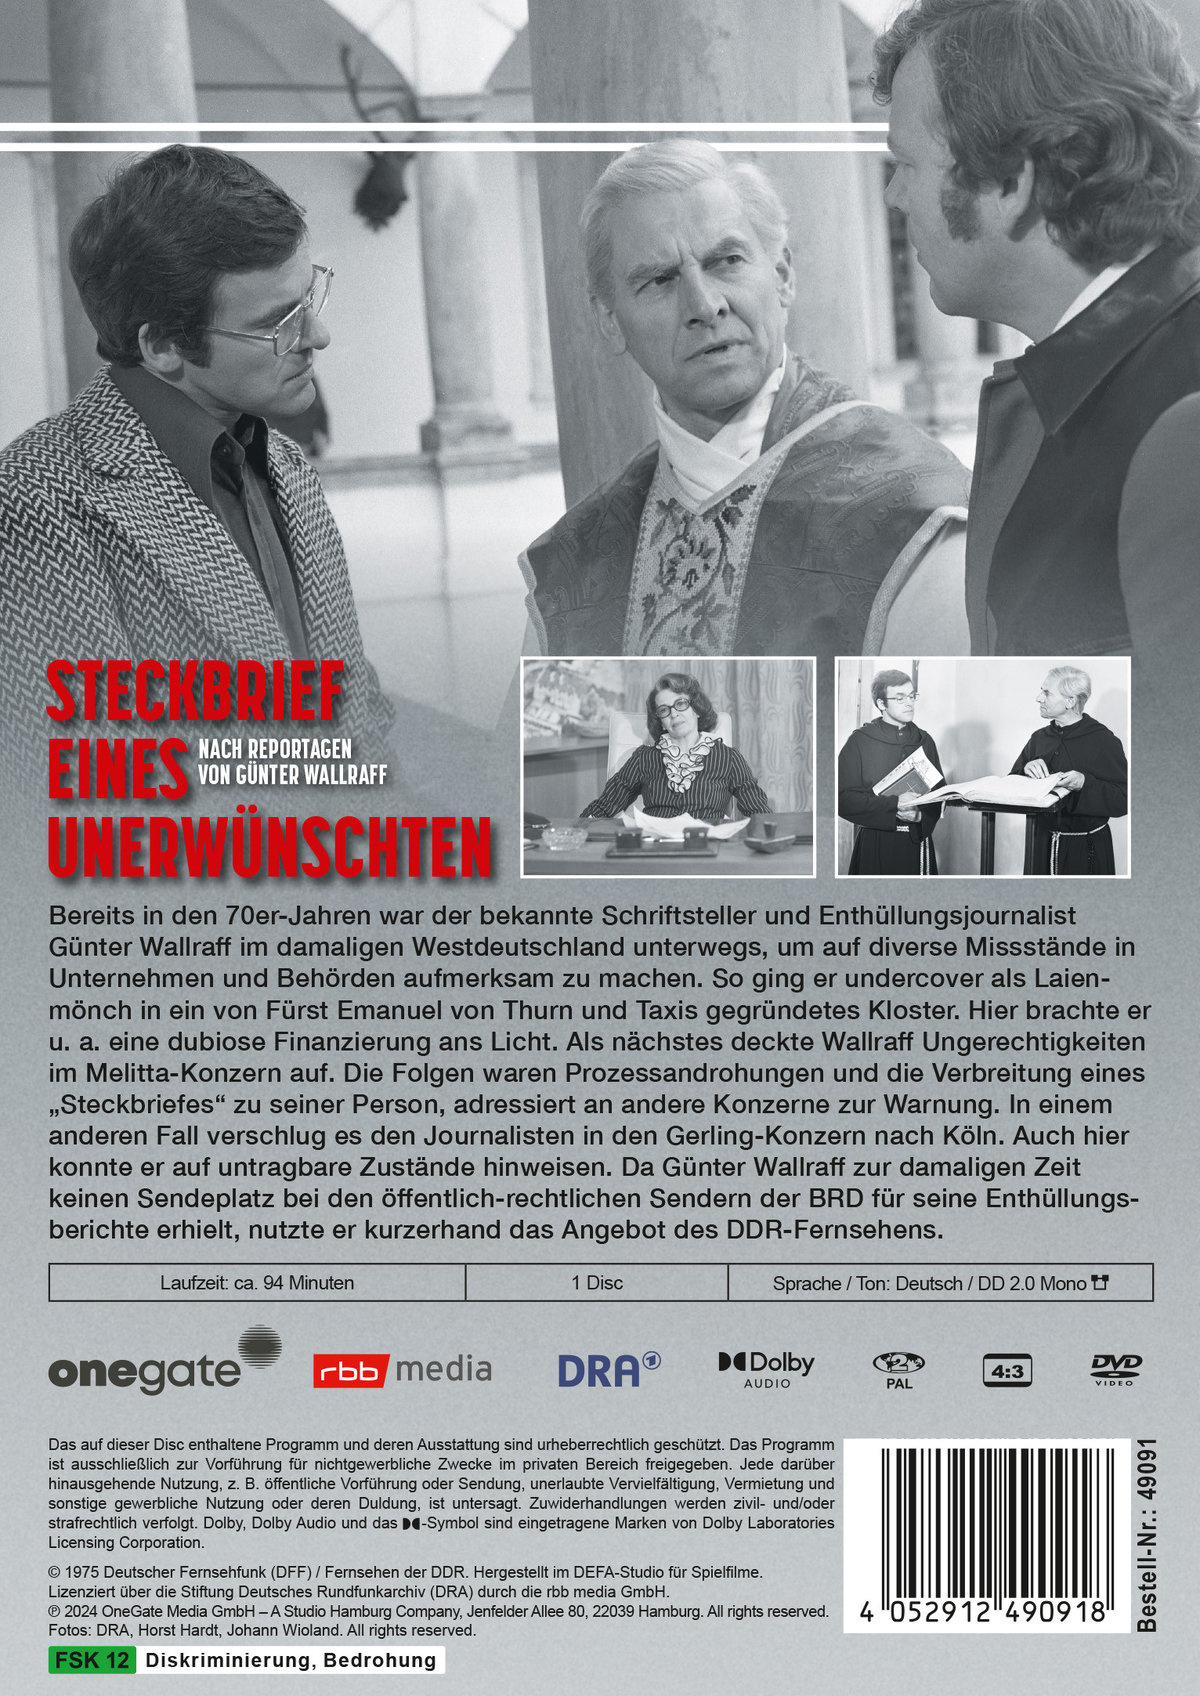 Steckbrief eines Unerwünschten - Nach Reportagen von Günter Wallraff (DDR TV-Archiv)  (DVD)